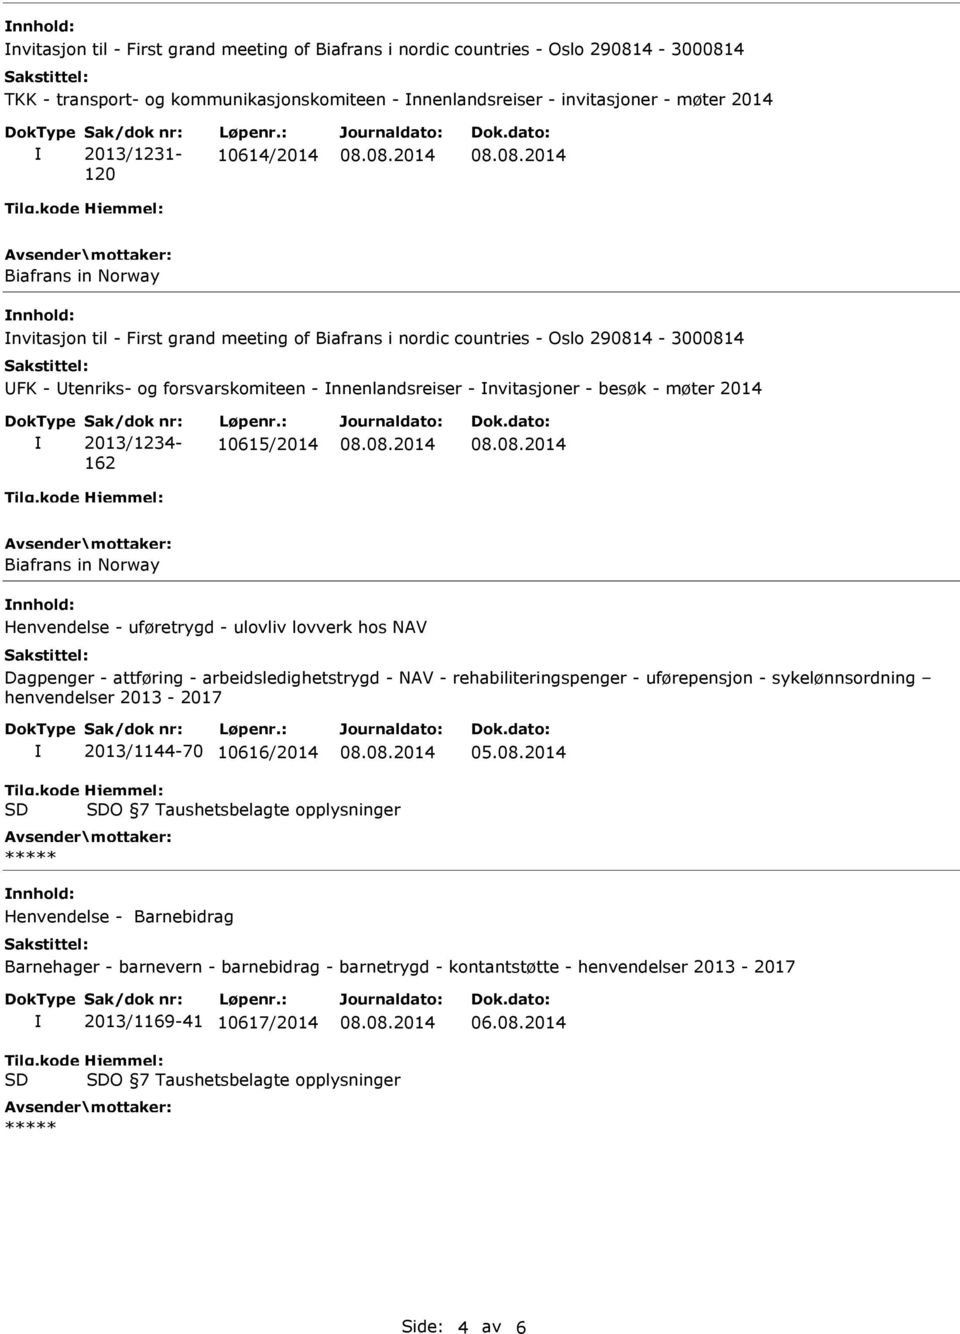 2013/1234-162 10615/2014 nnhold: Henvendelse - uføretrygd - ulovliv lovverk hos NAV Dagpenger - attføring - arbeidsledighetstrygd - NAV - rehabiliteringspenger - uførepensjon - sykelønnsordning